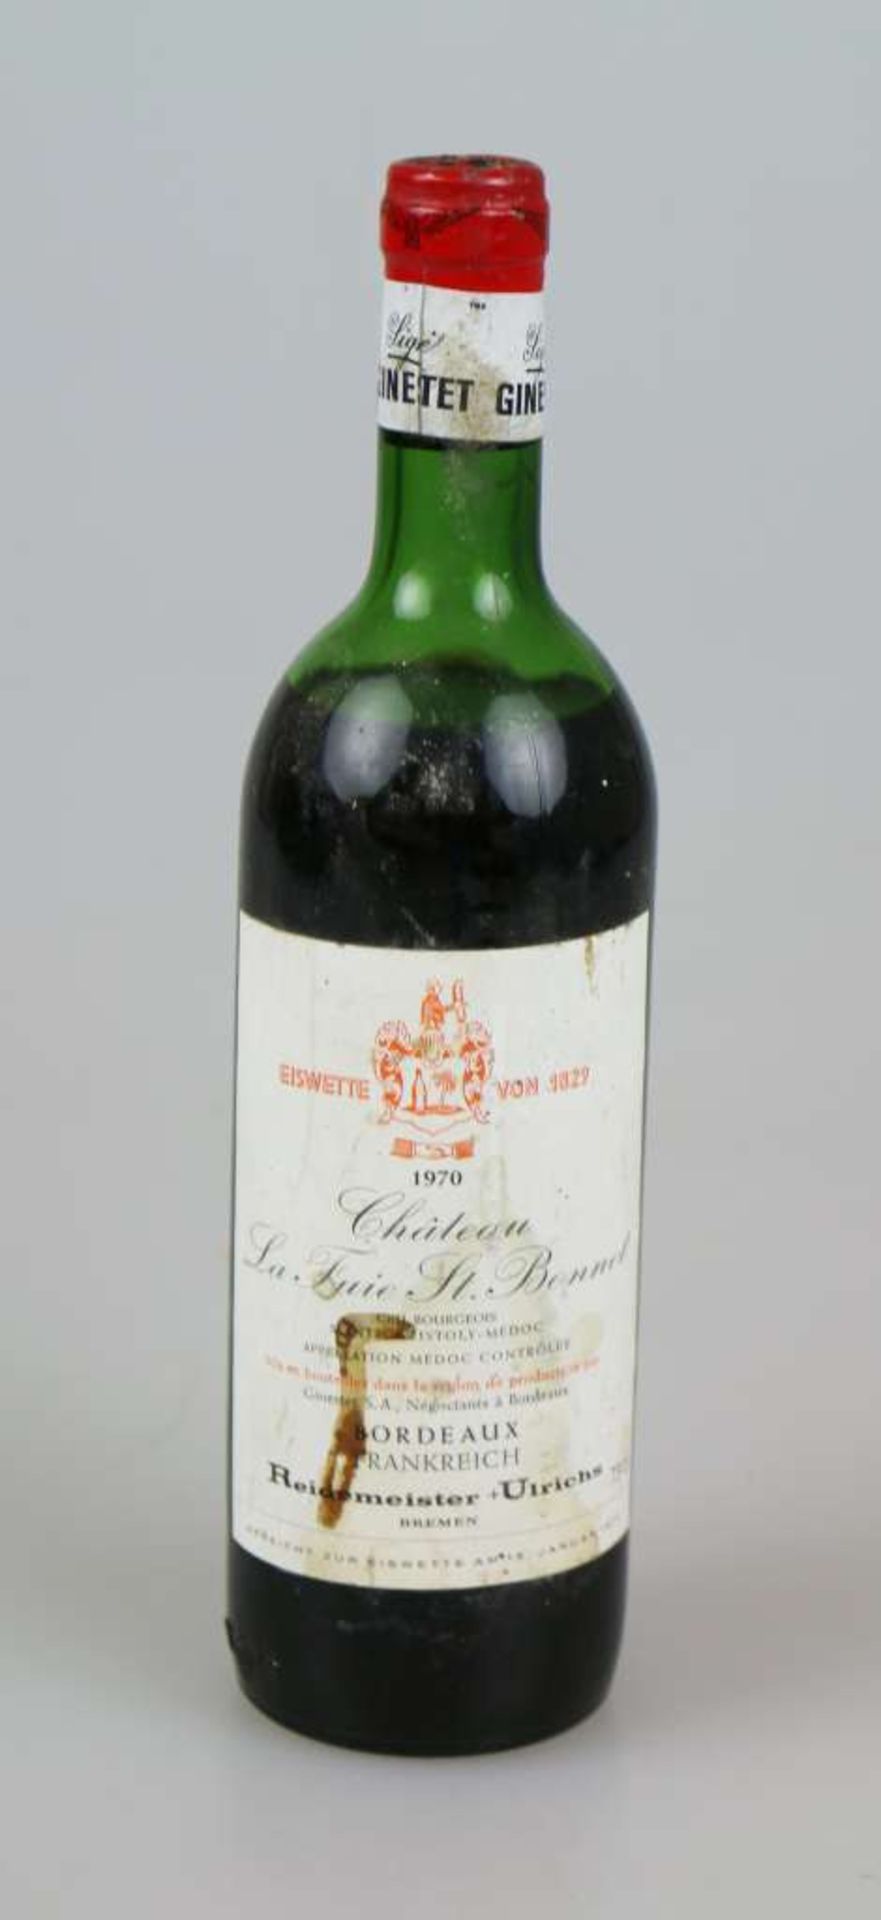 Rotwein, Flasche Château La Fuie St. Bonnet, Cru Bourgeois, Saint-Christoly-Médoc, 1970, 0,75 L. Mid